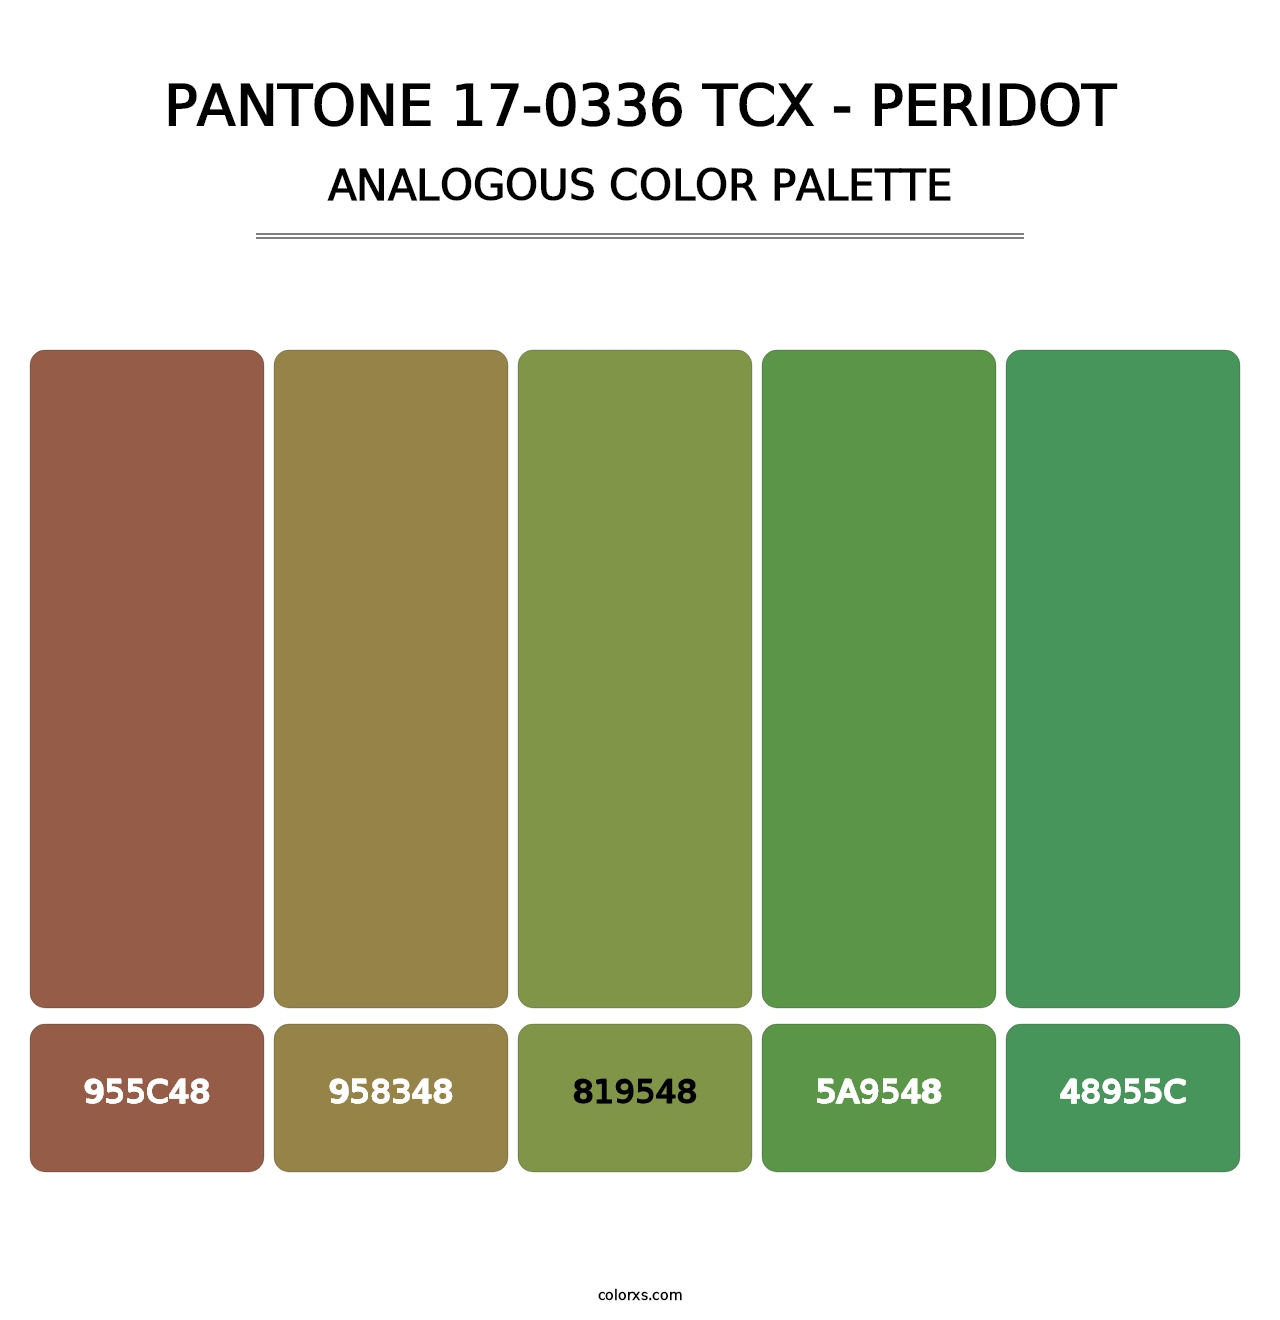 PANTONE 17-0336 TCX - Peridot - Analogous Color Palette